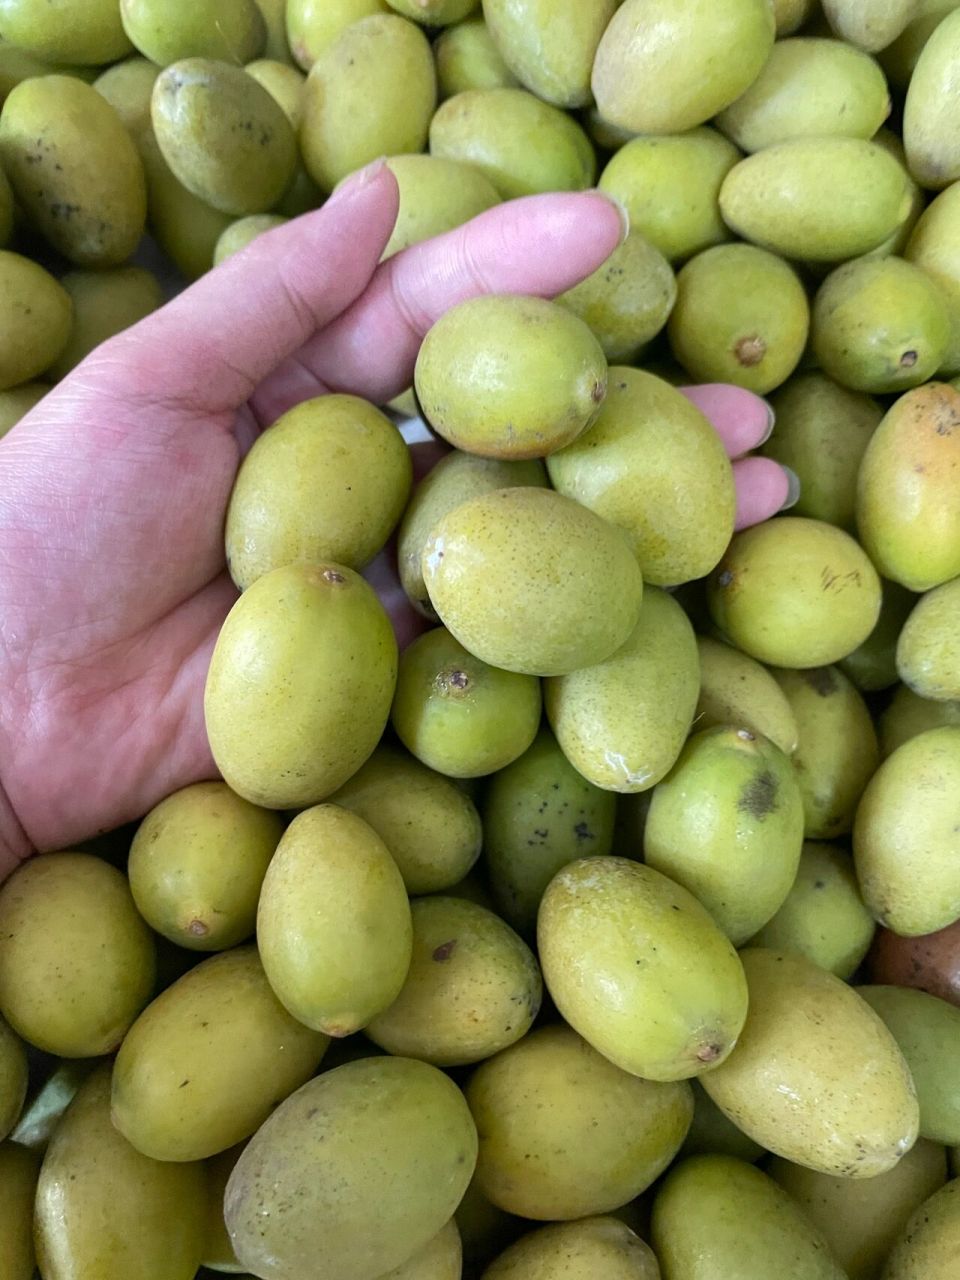 潮汕特产天然绿色食品金灶三捻橄榄,油甘 在潮汕地区,最出名里的水果